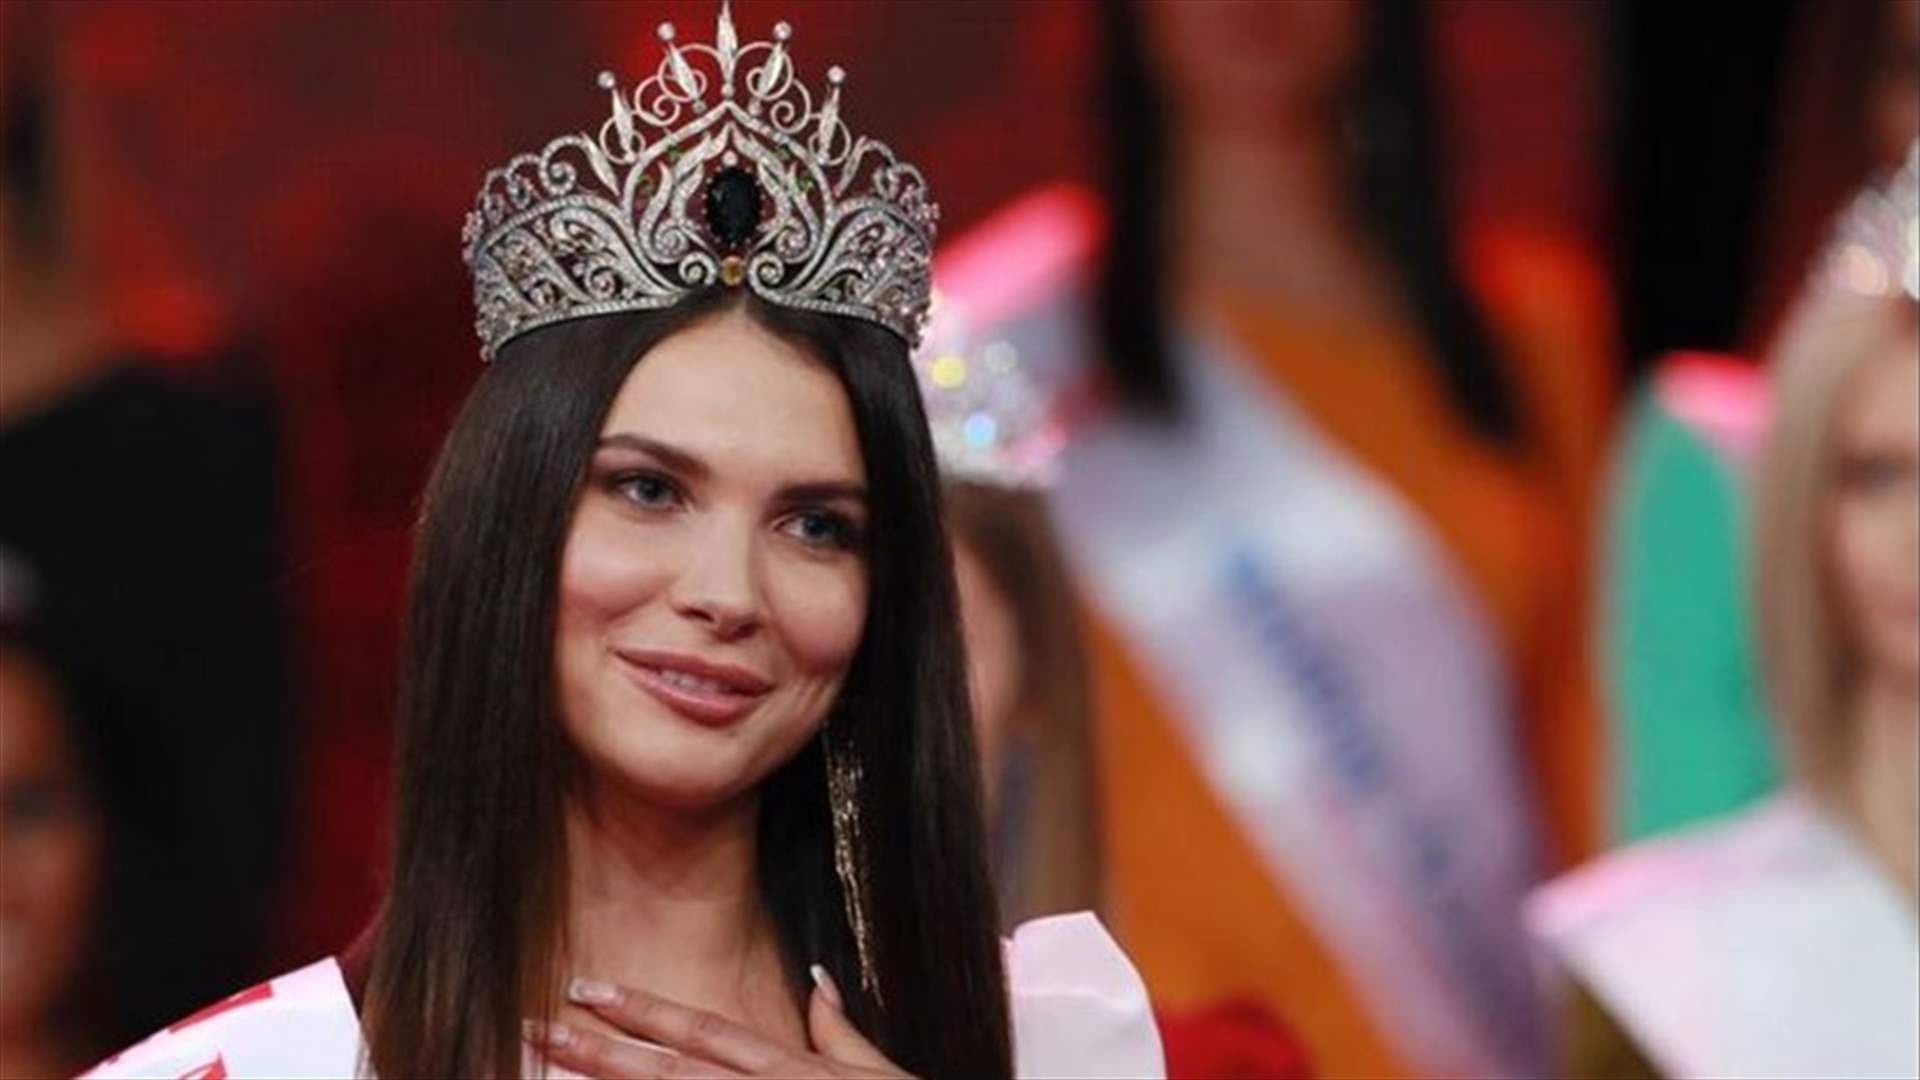 تجريد ملكة جمال روسيّة من لقبها بسبب صورٍ ورّطتها على انستغرام